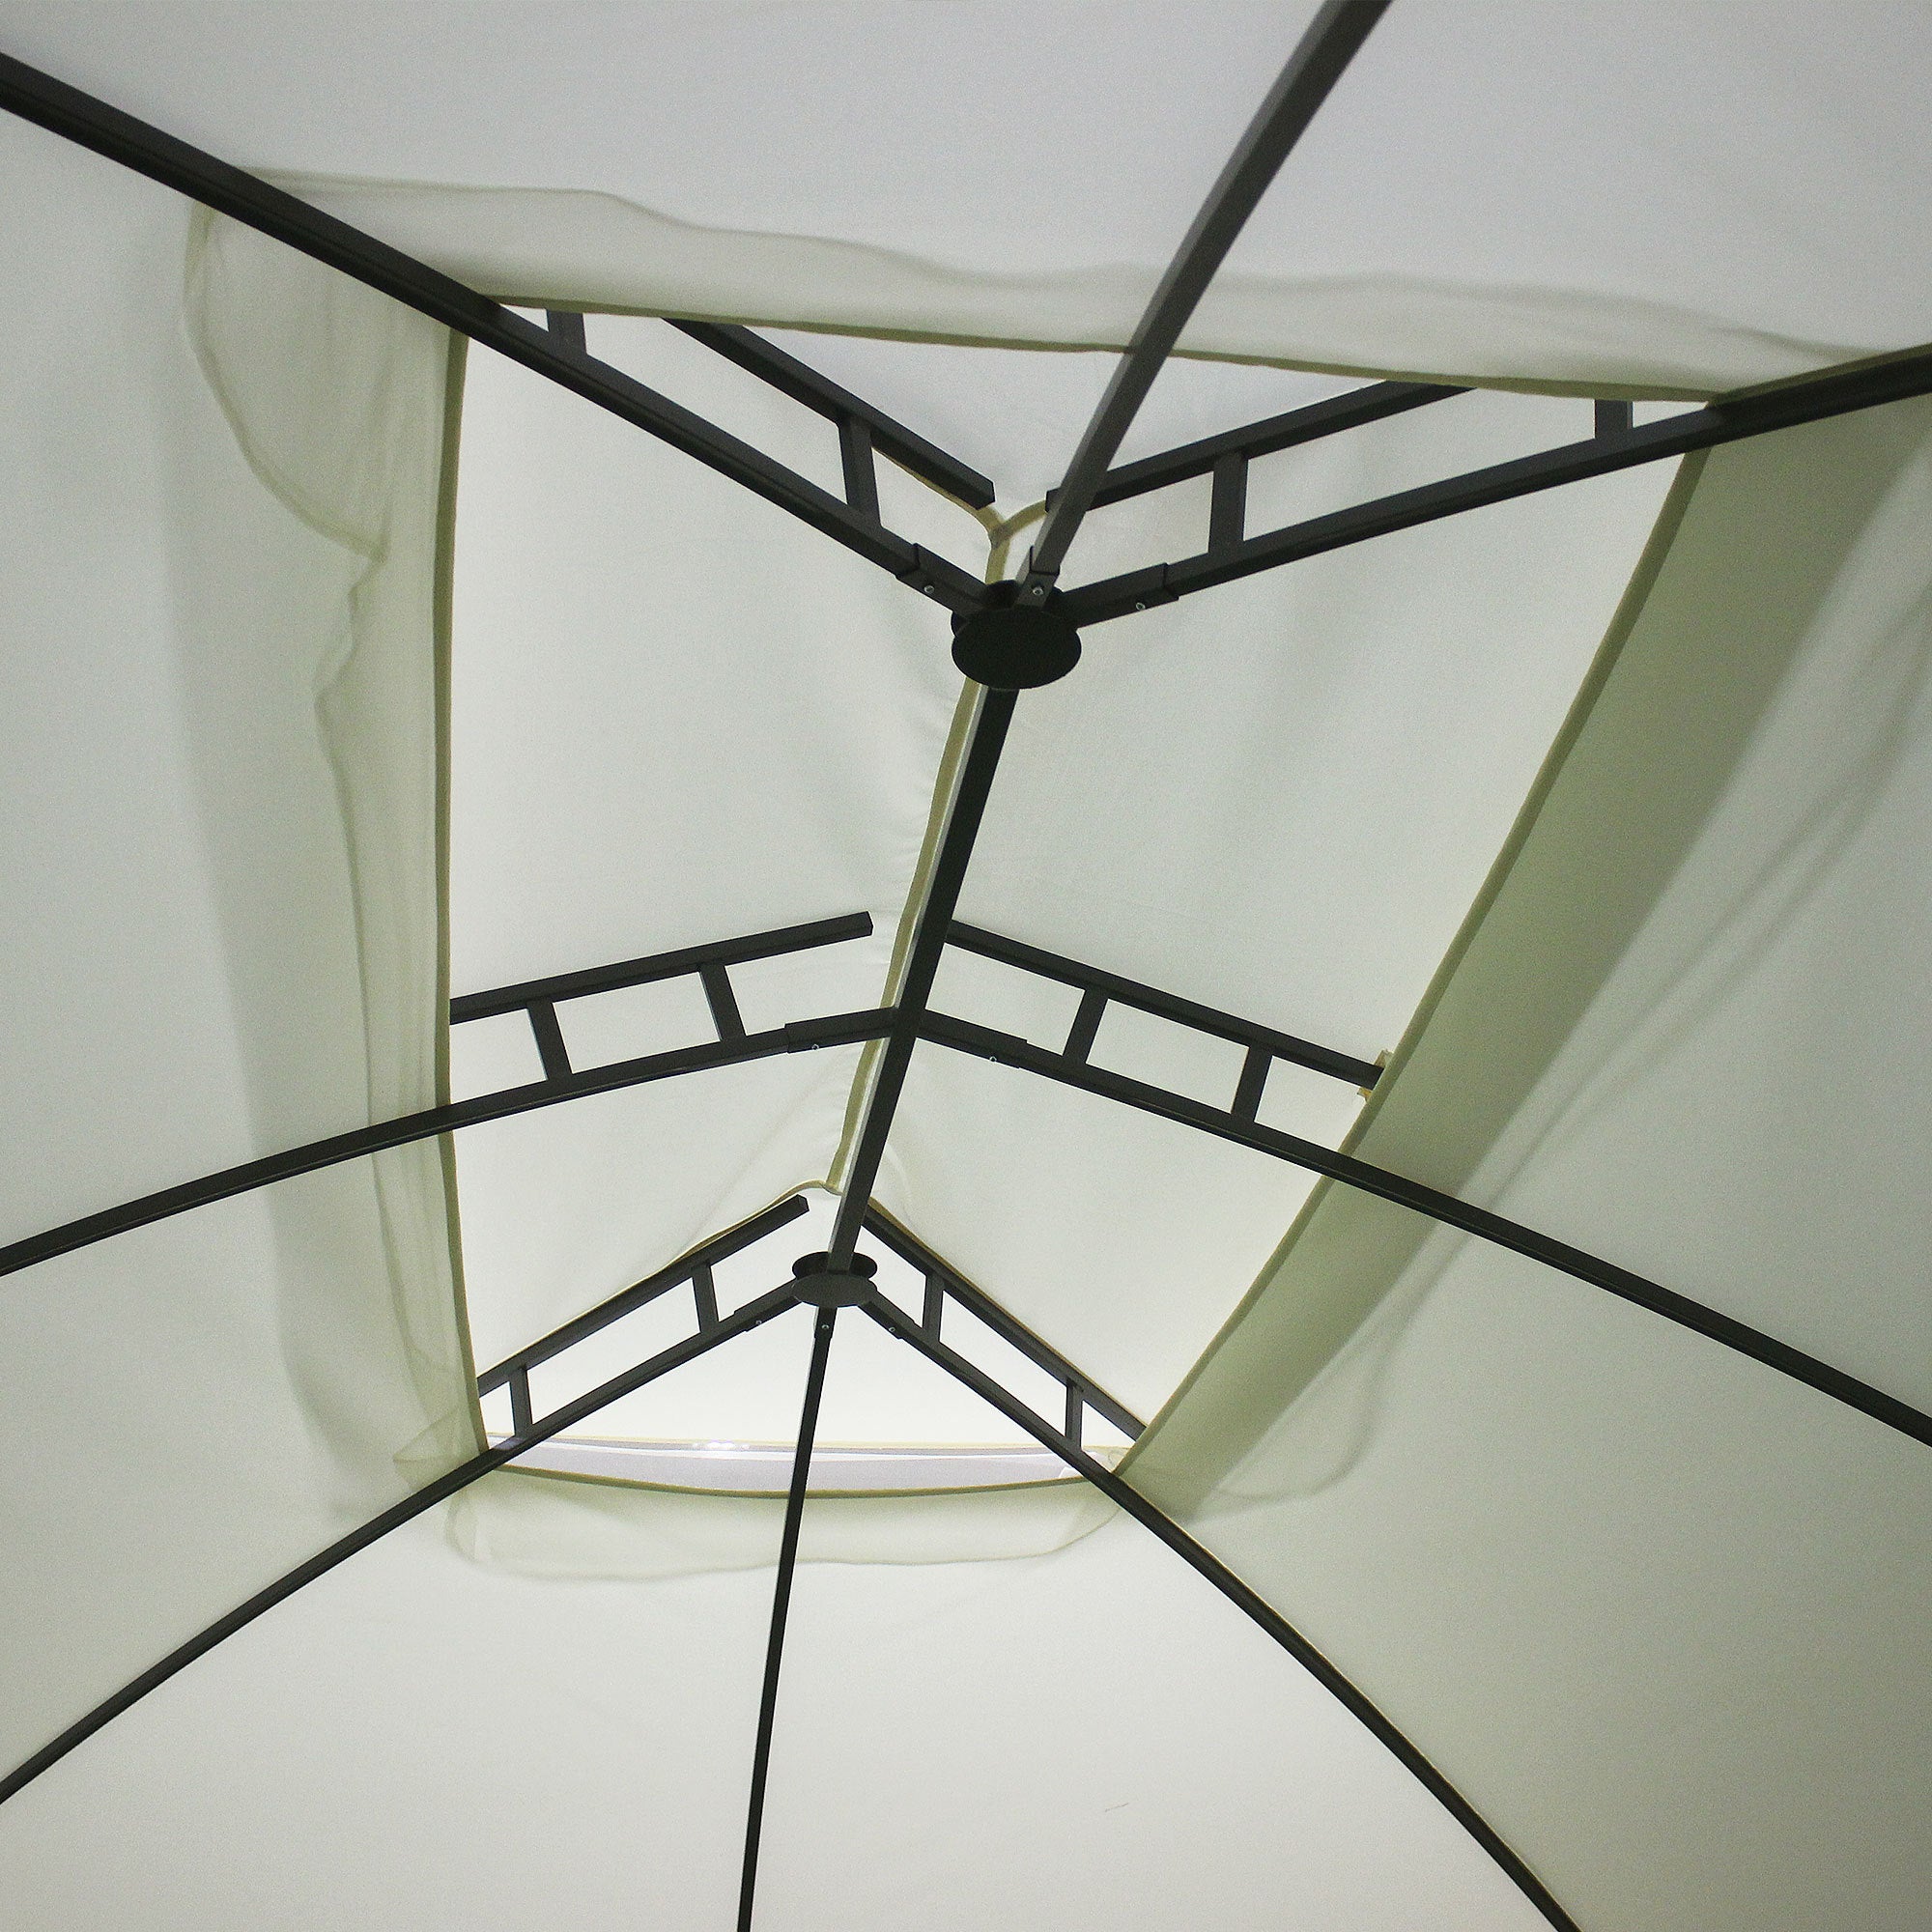 10' x 13' Patio Gazebo Canopy, Double Vented Roof beige-steel